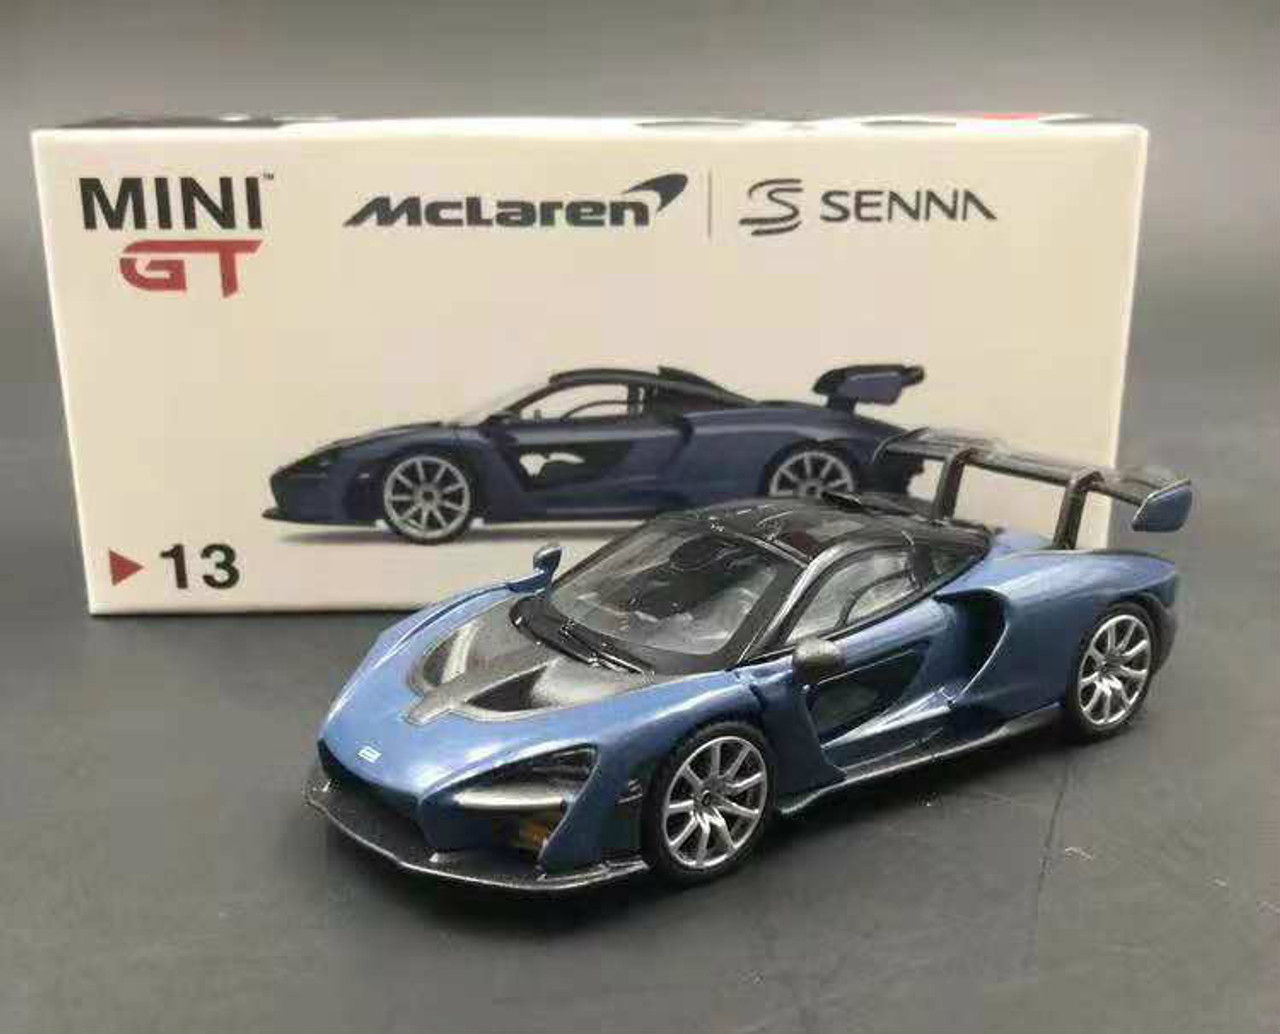 Mini GT McLaren Senna Onyx Black LHD 1/64 Diecast Model Car MJ